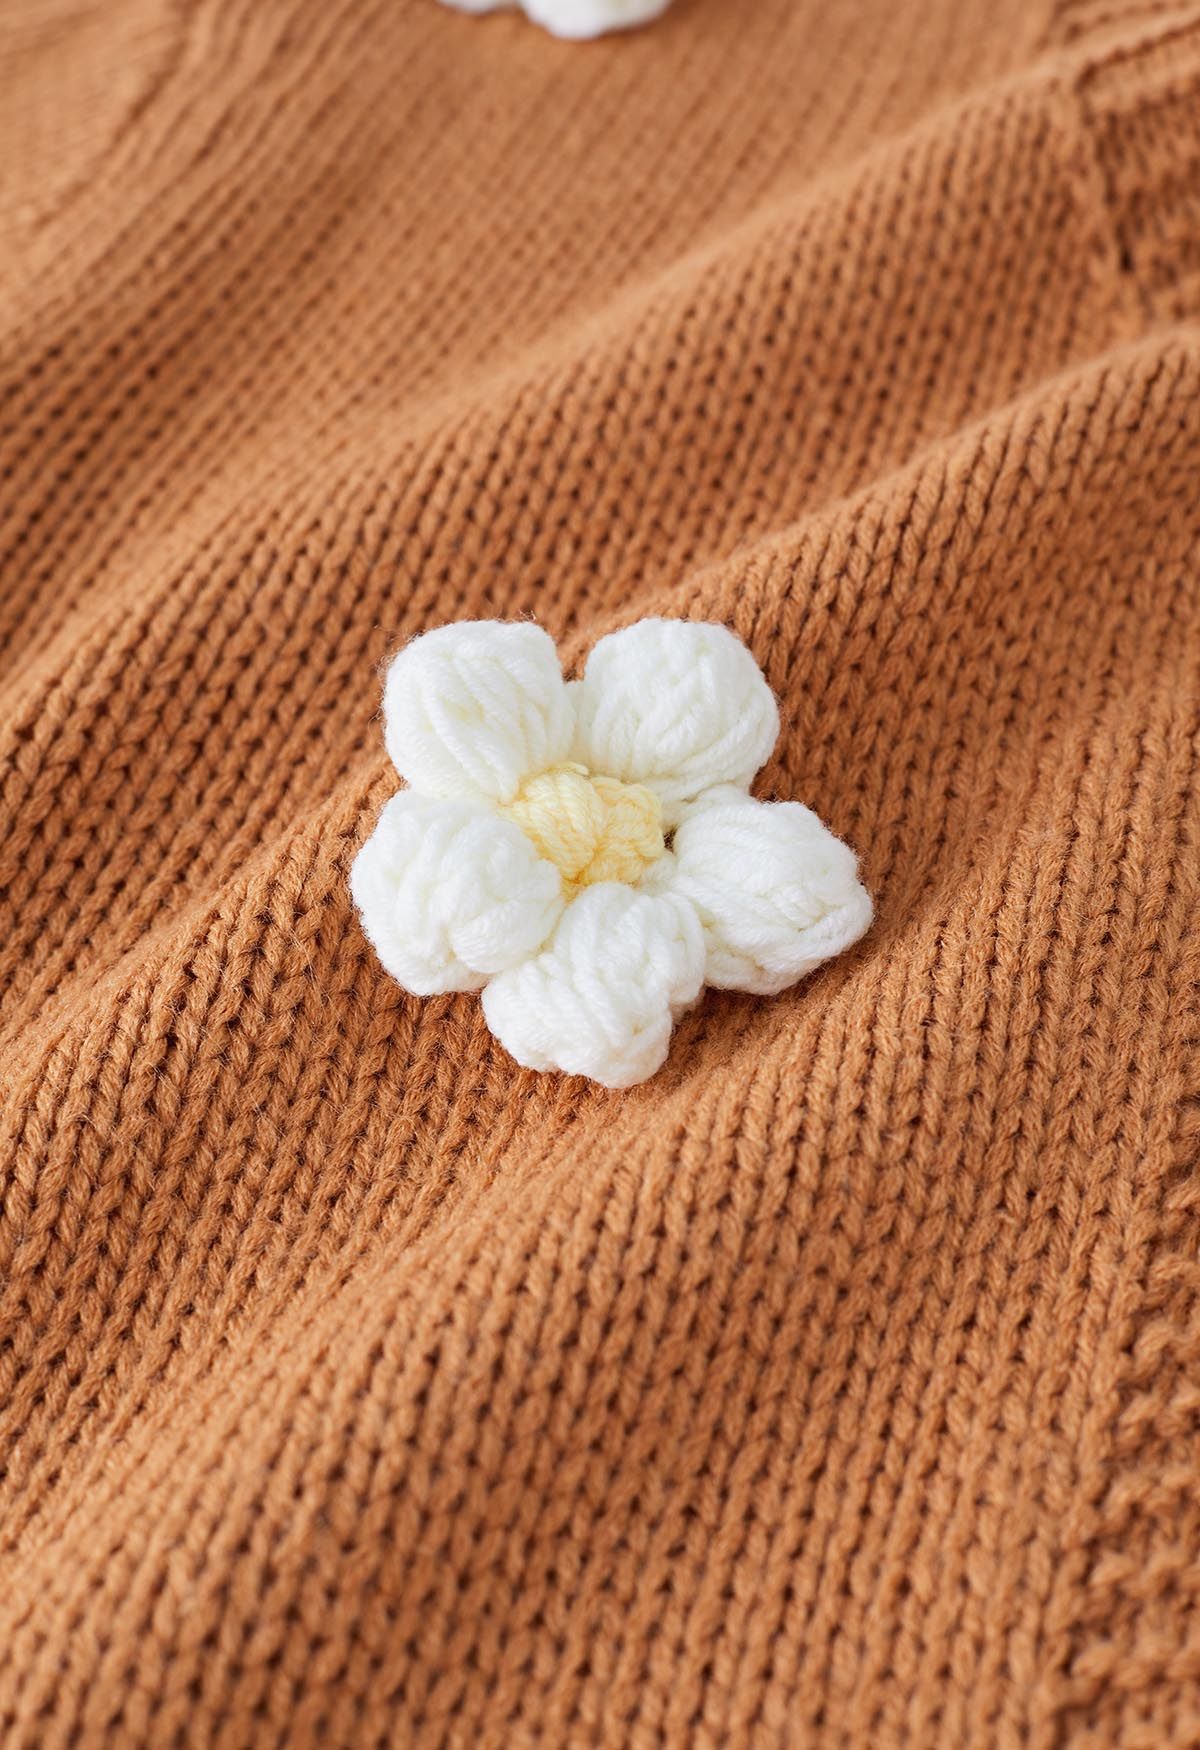 Cardigan en tricot ouvert sur le devant à fleurs en point 3D en beige